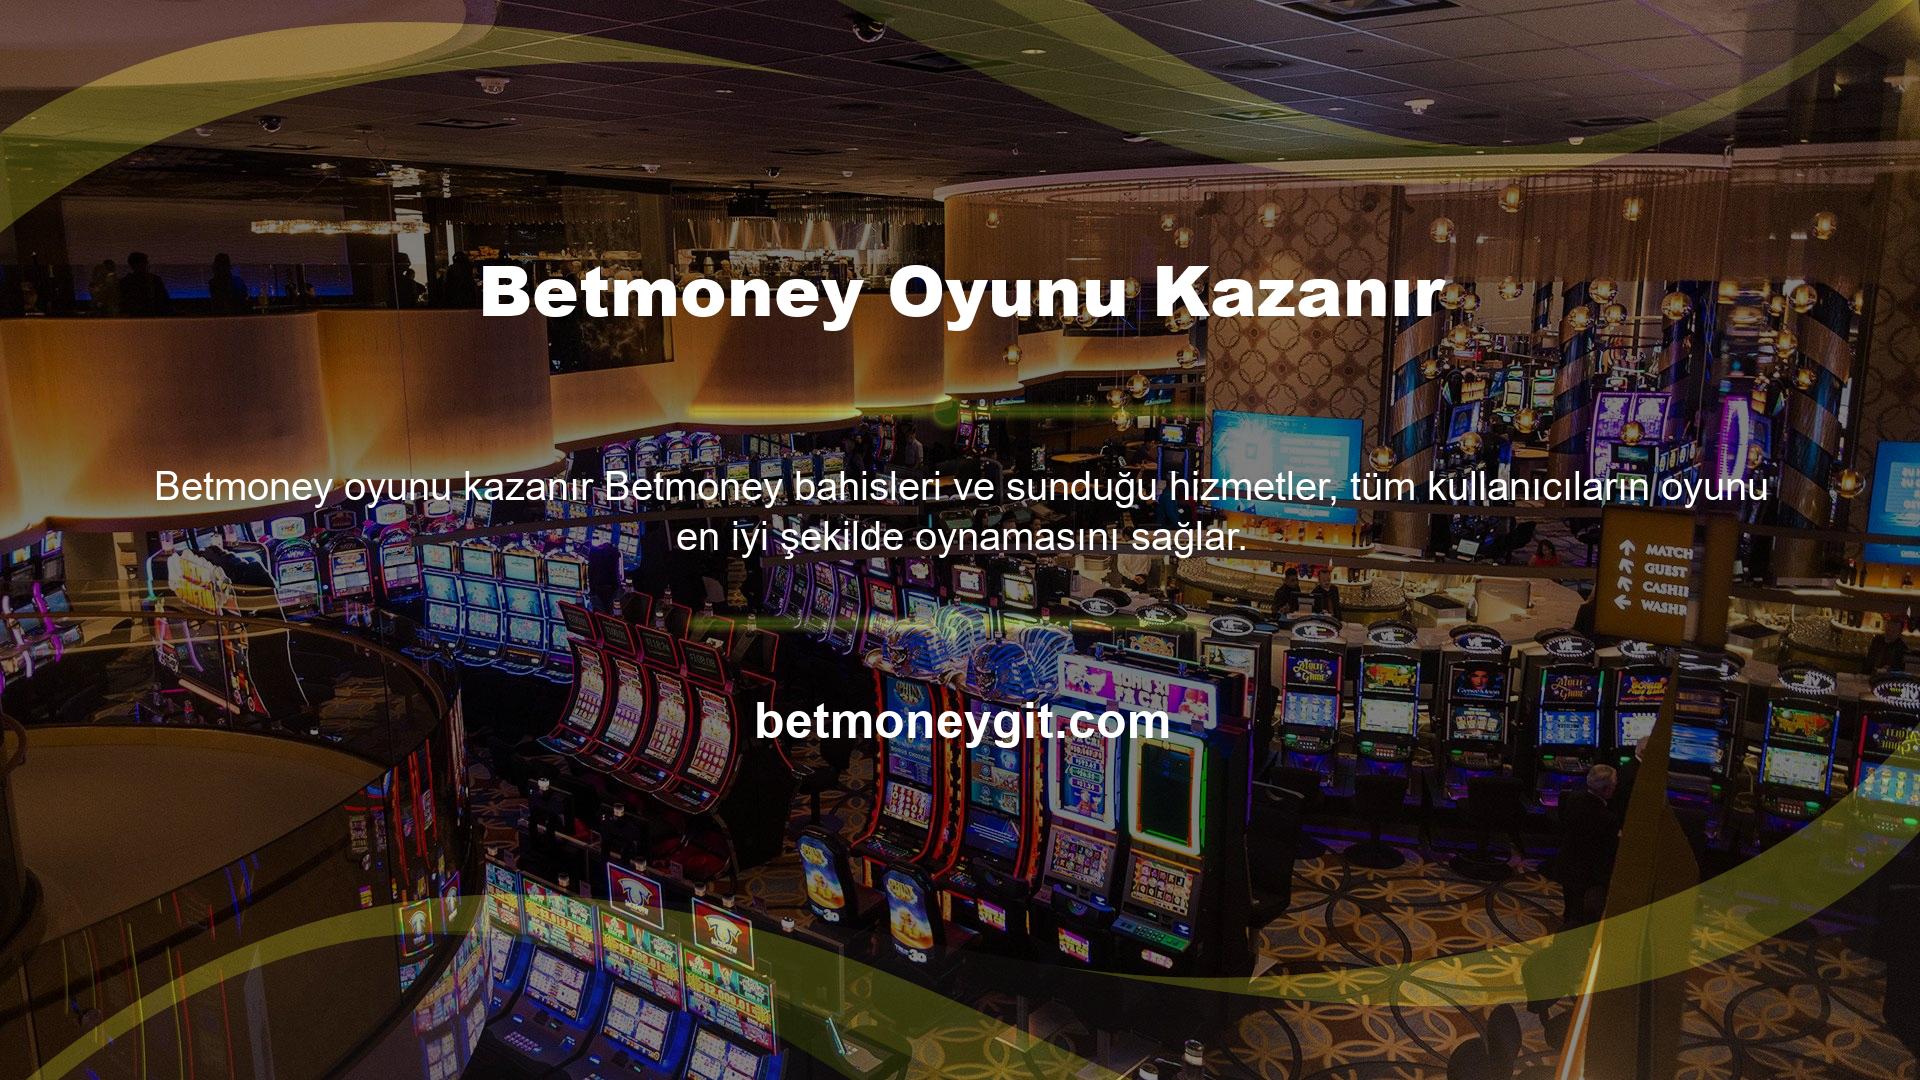 Betmoney oyunu kazanır Büyük ödülleri kazanmak için oyun kurallarına ve Betmoney sitesinin hizmet sözleşmesine uyulmalıdır